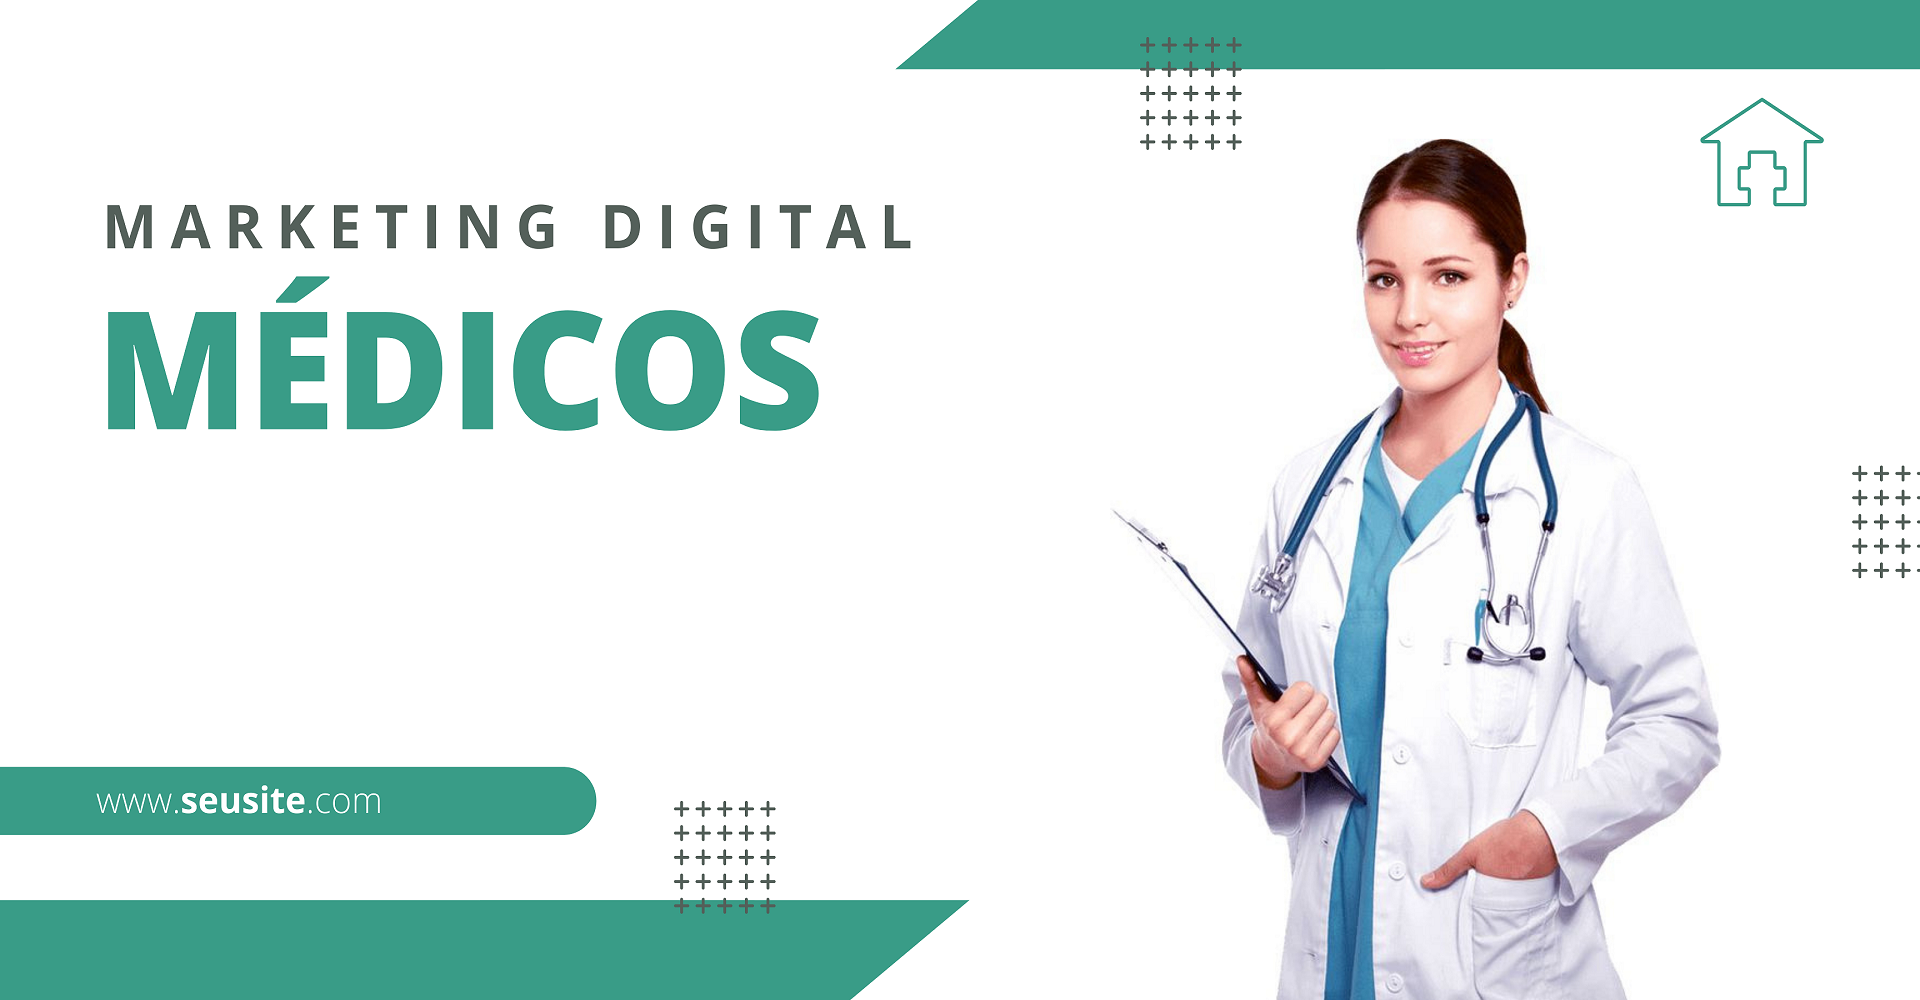 Marketing Digital para Médicos, Clínicas, Hospitais, Consultorios e todos os profissionais de saúde